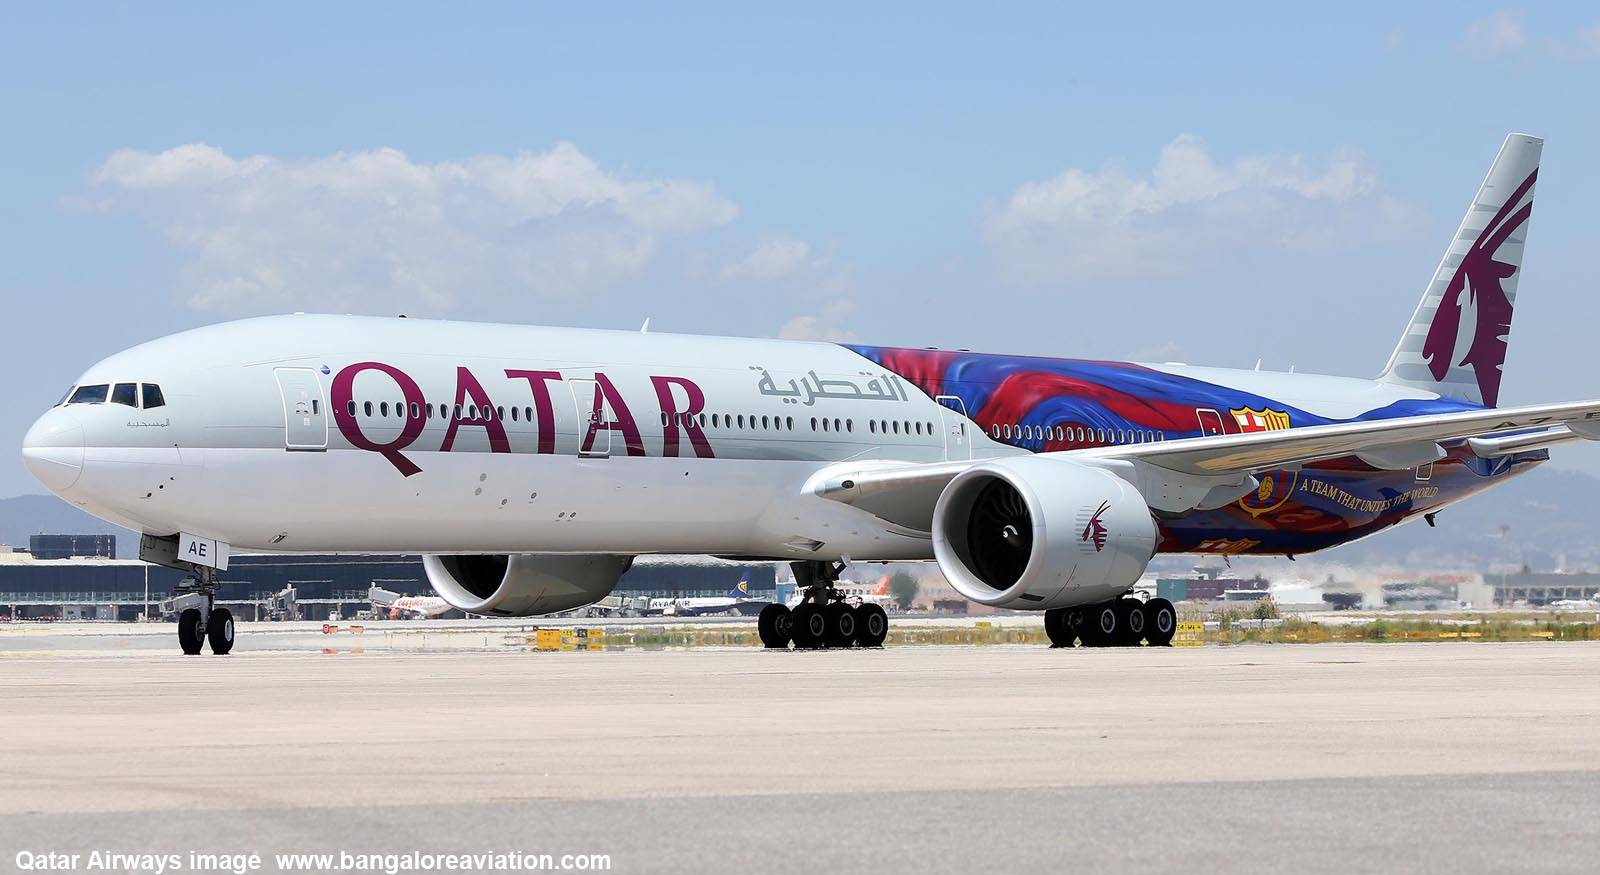 卡塔尔航空被评为2021年"全球最佳航空公司"